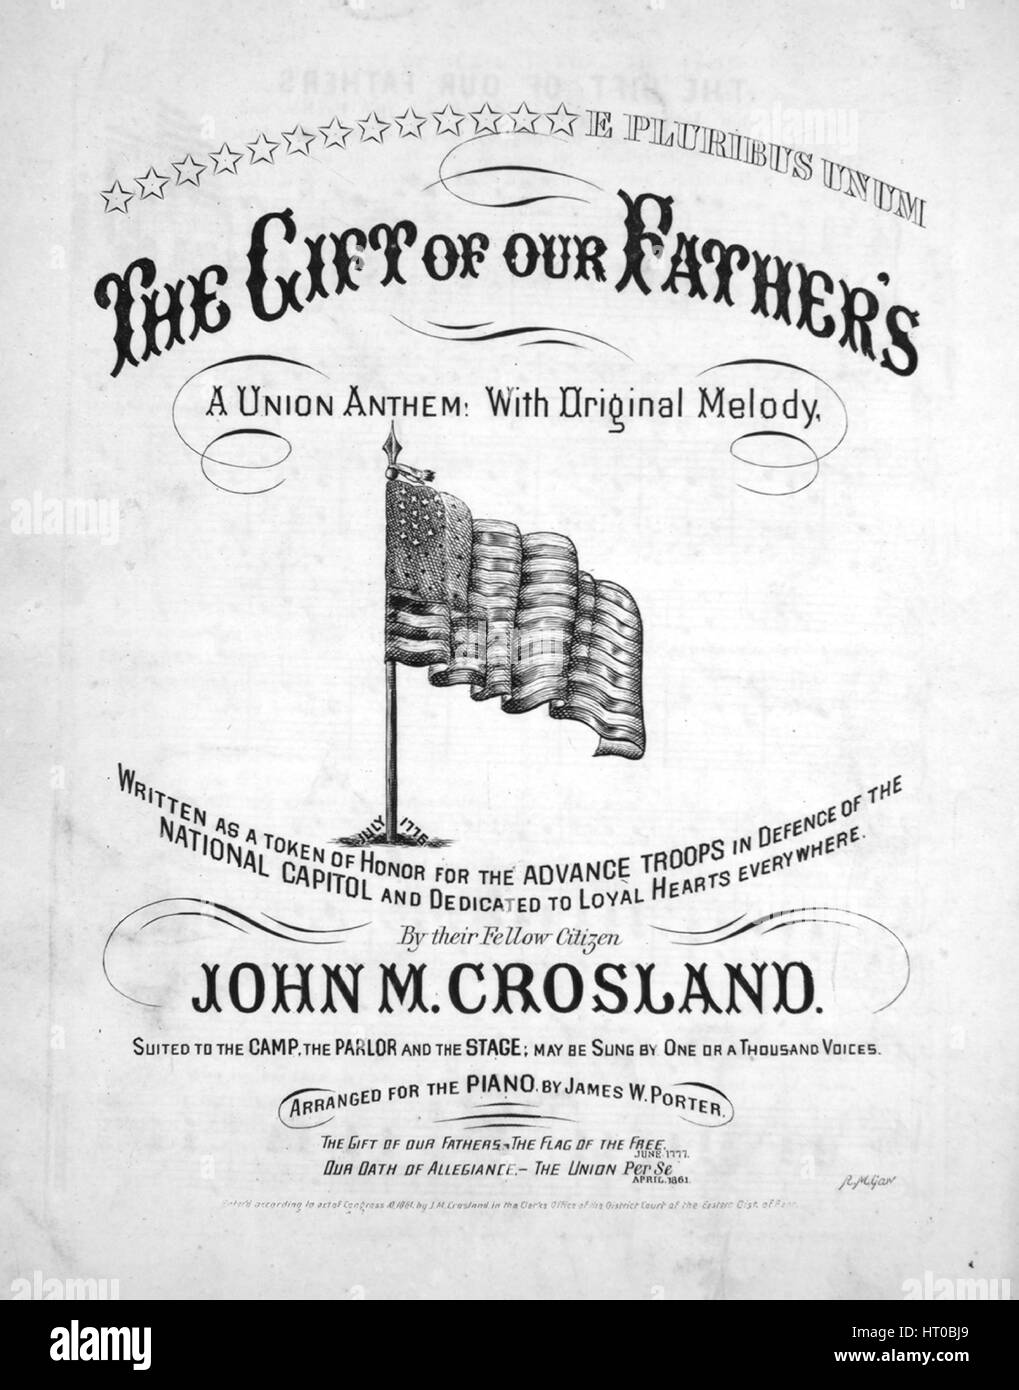 Imagen de cubierta de partituras de la canción "El regalo de nuestros  padres una Unión himno!', con la autoría original notas leyendo 'Con la  melodía original por John M Crosland adaptados al